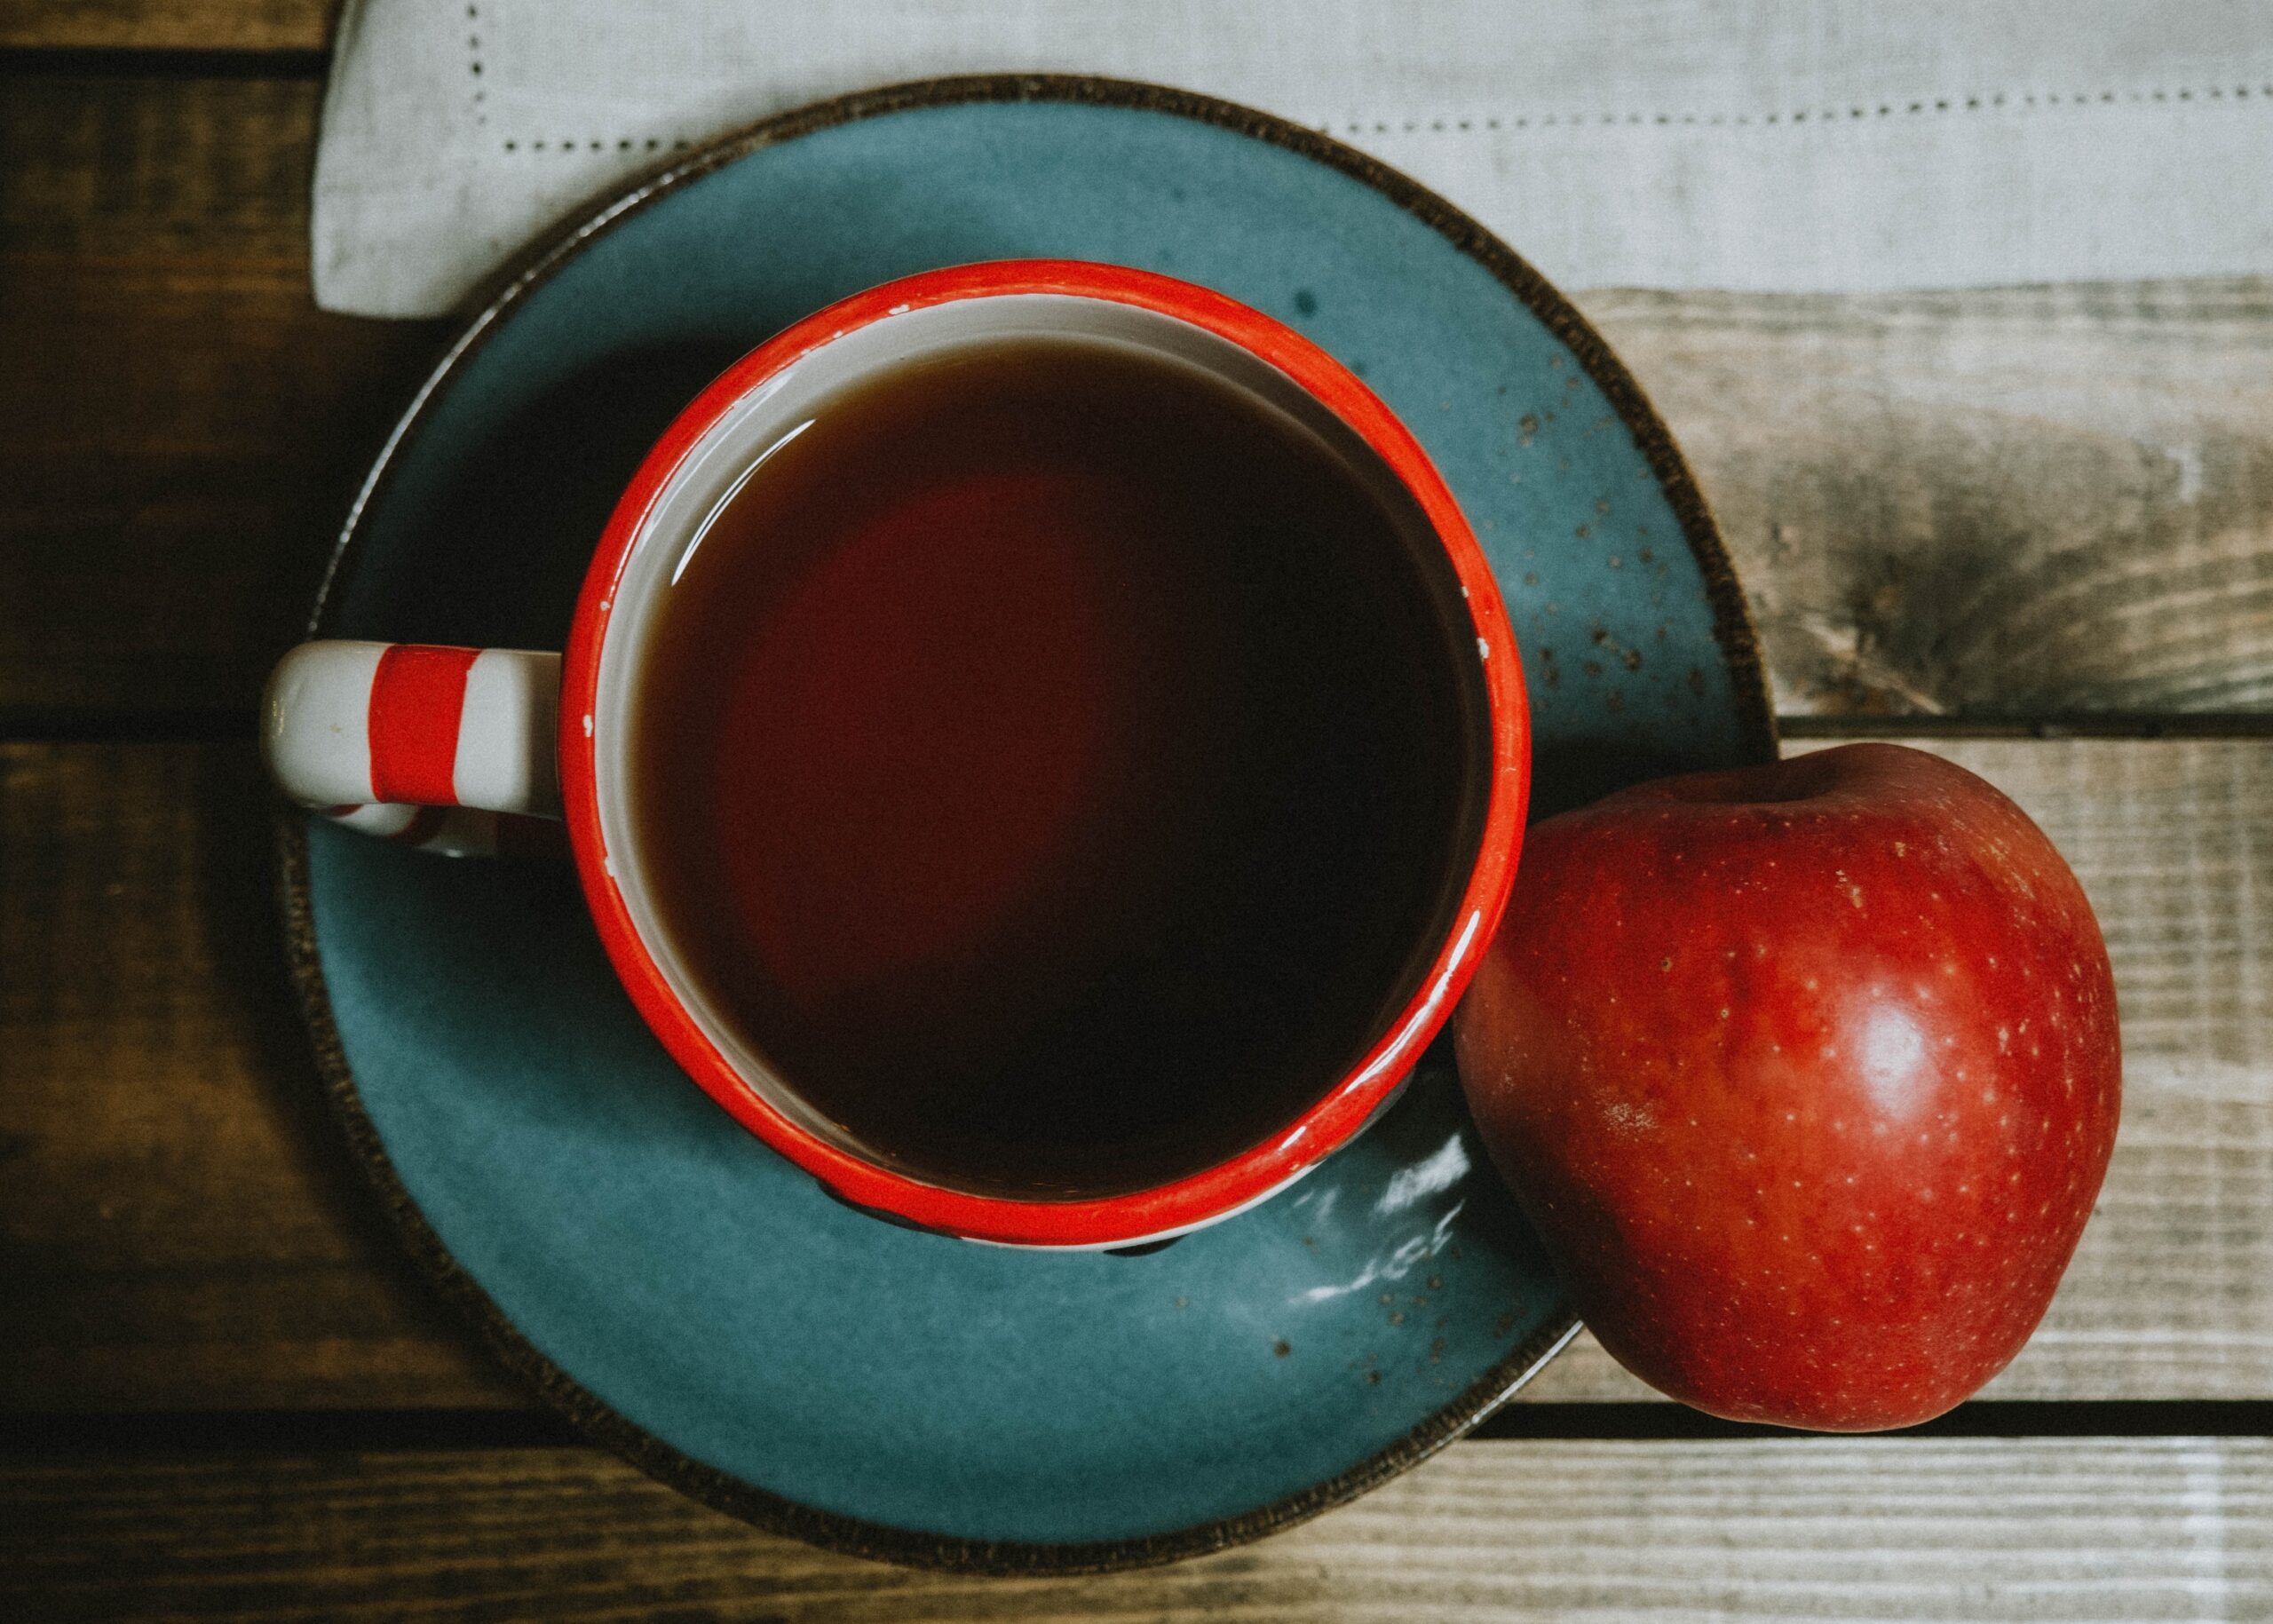 Blå keramikkopp med te och ett rött äpple på bord, sett uppifrån